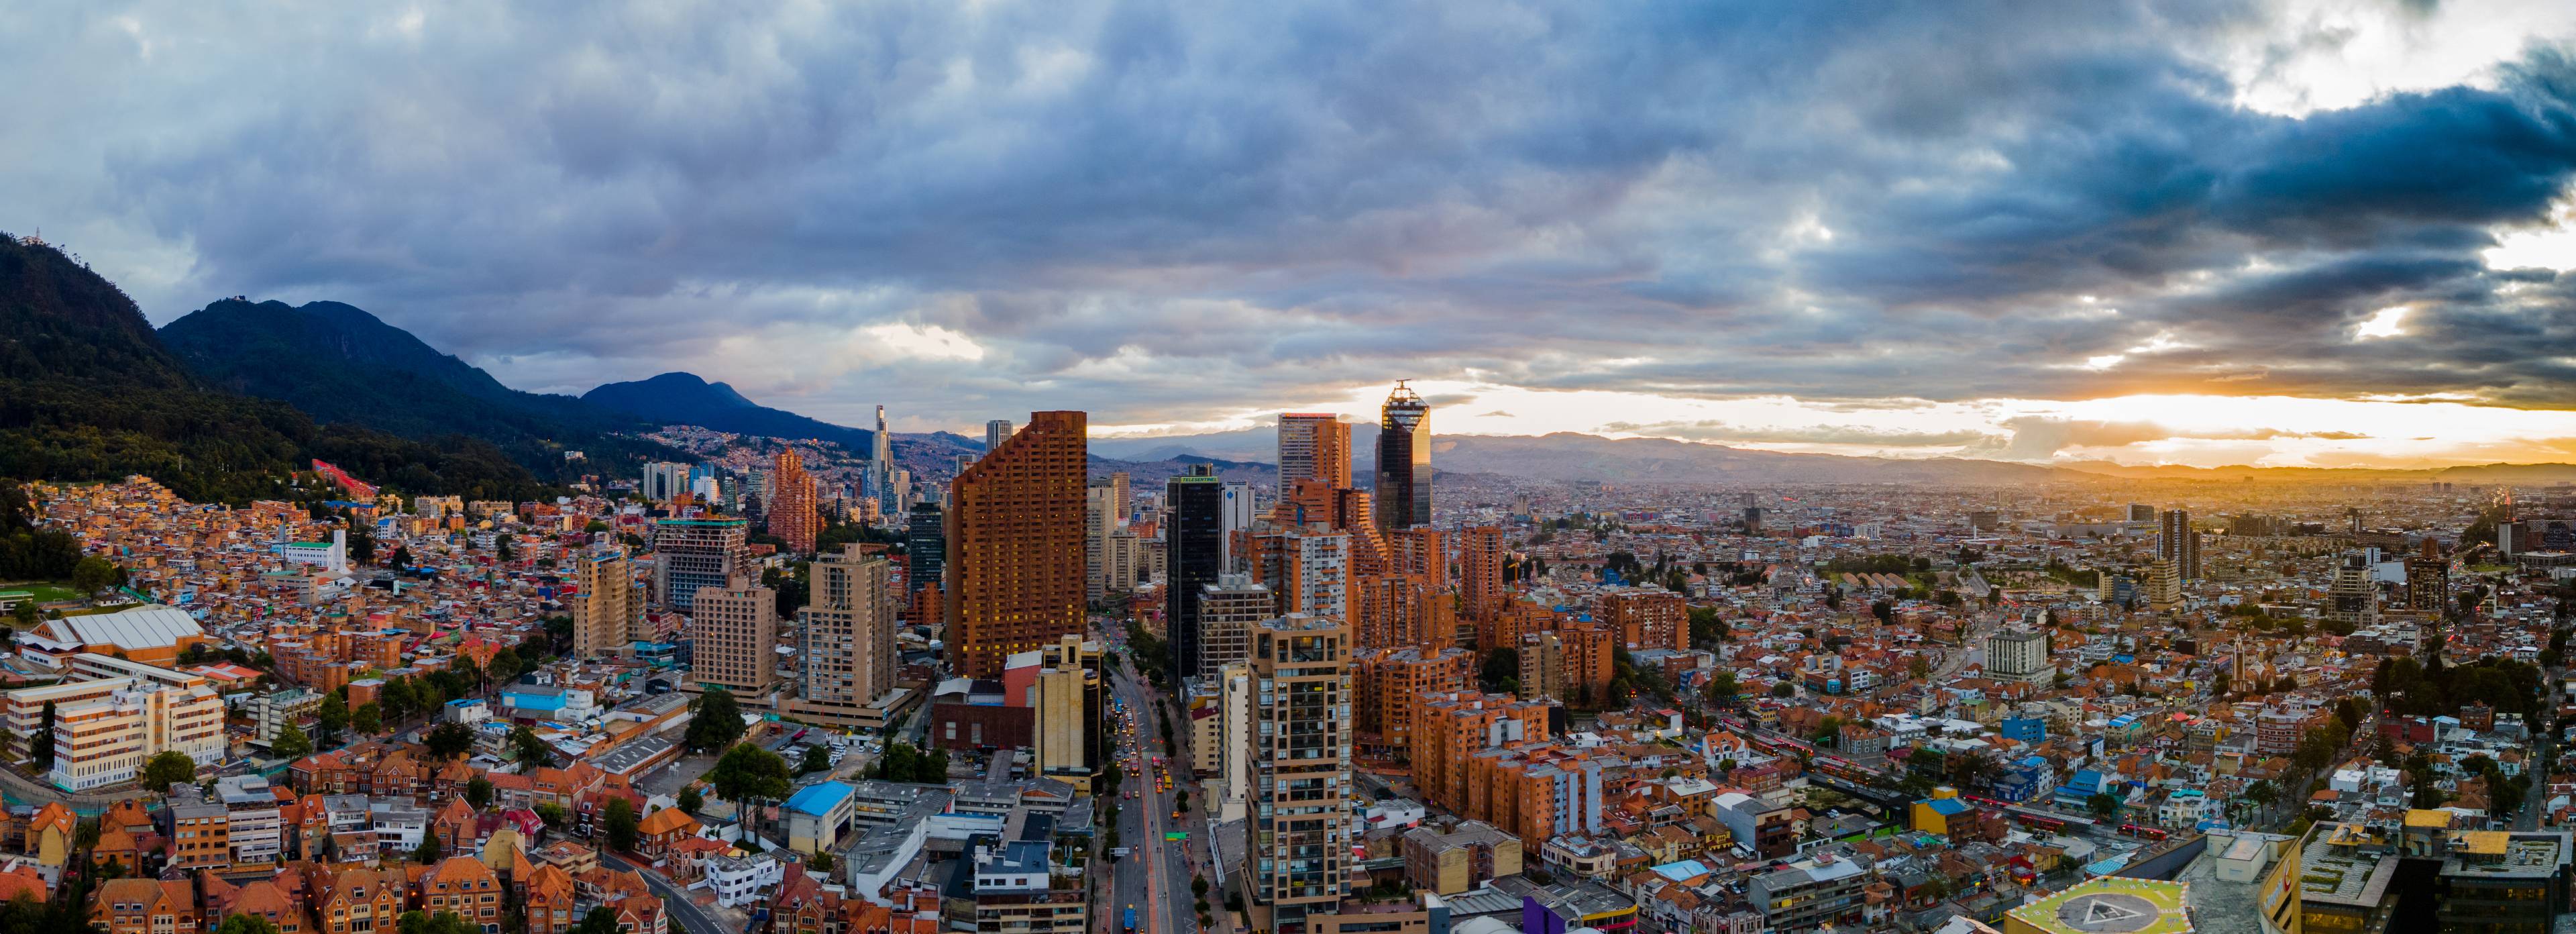 Bogota – eine Metropole zwischen Kolonialzeit und Moderne